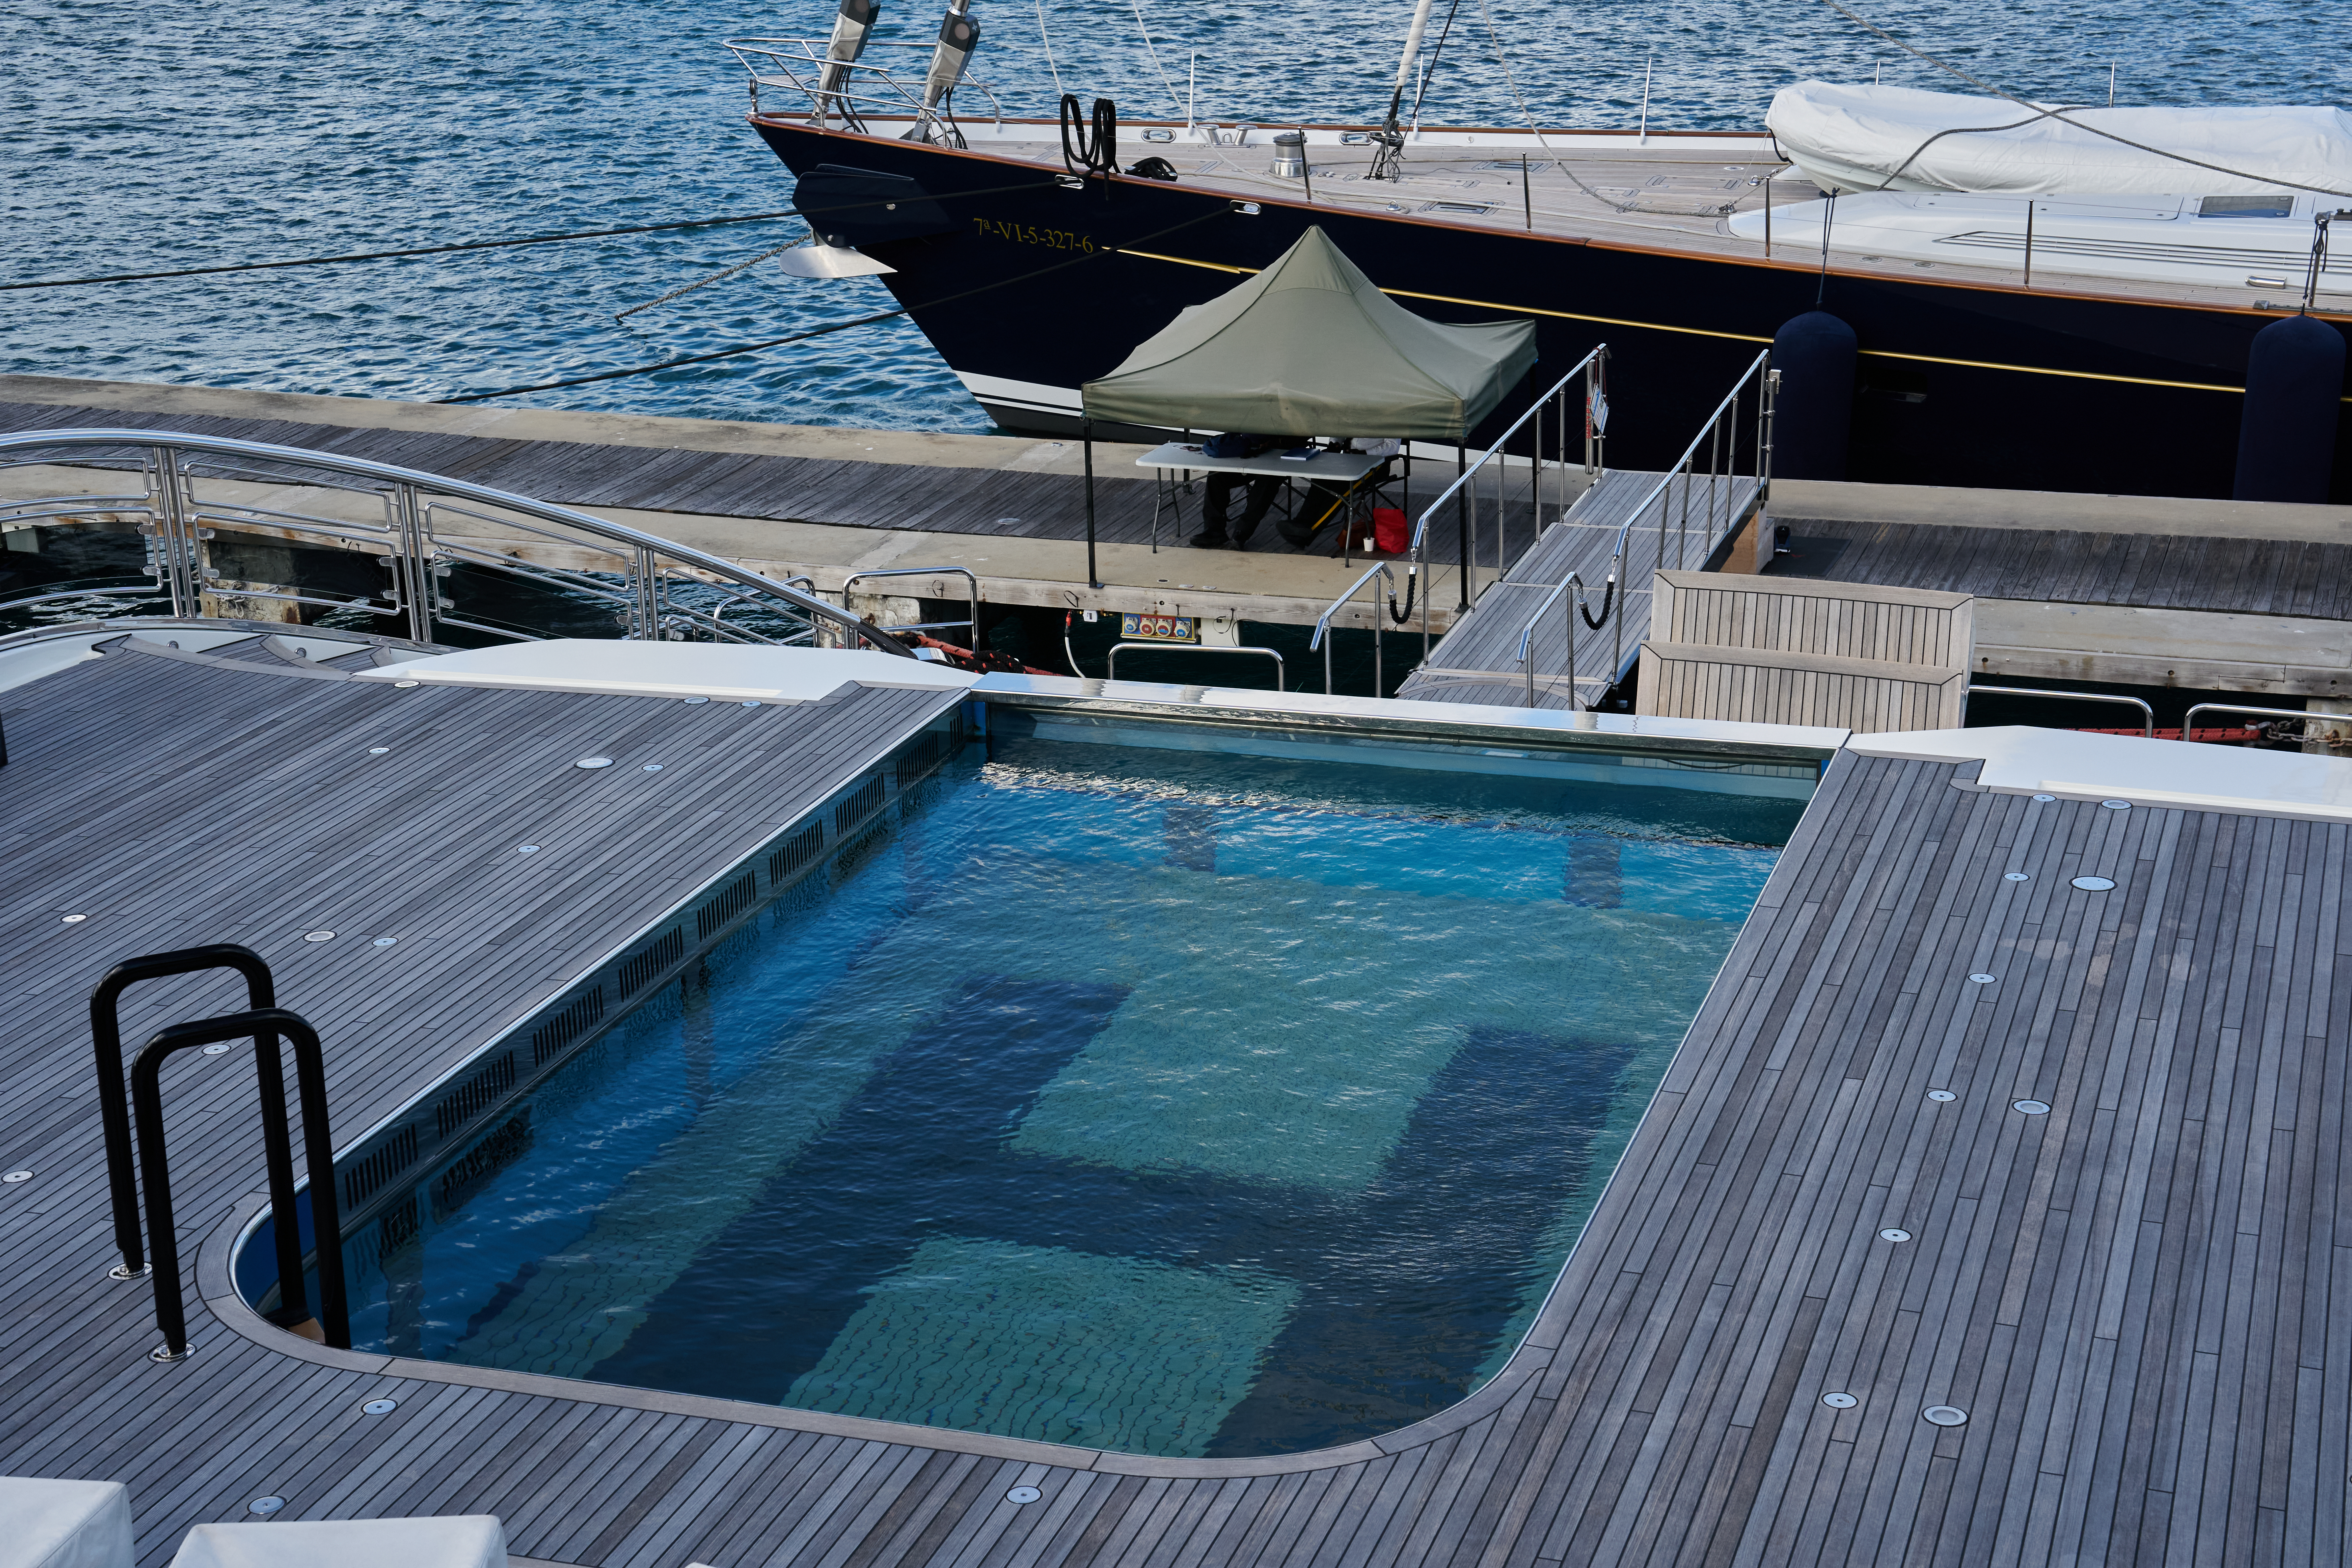 Zu den Luxusmerkmalen der Yacht gehört ein Infinity-Pool, der sich per Hydraulik in einen Hubschrauberlandeplatz verwandeln lässt